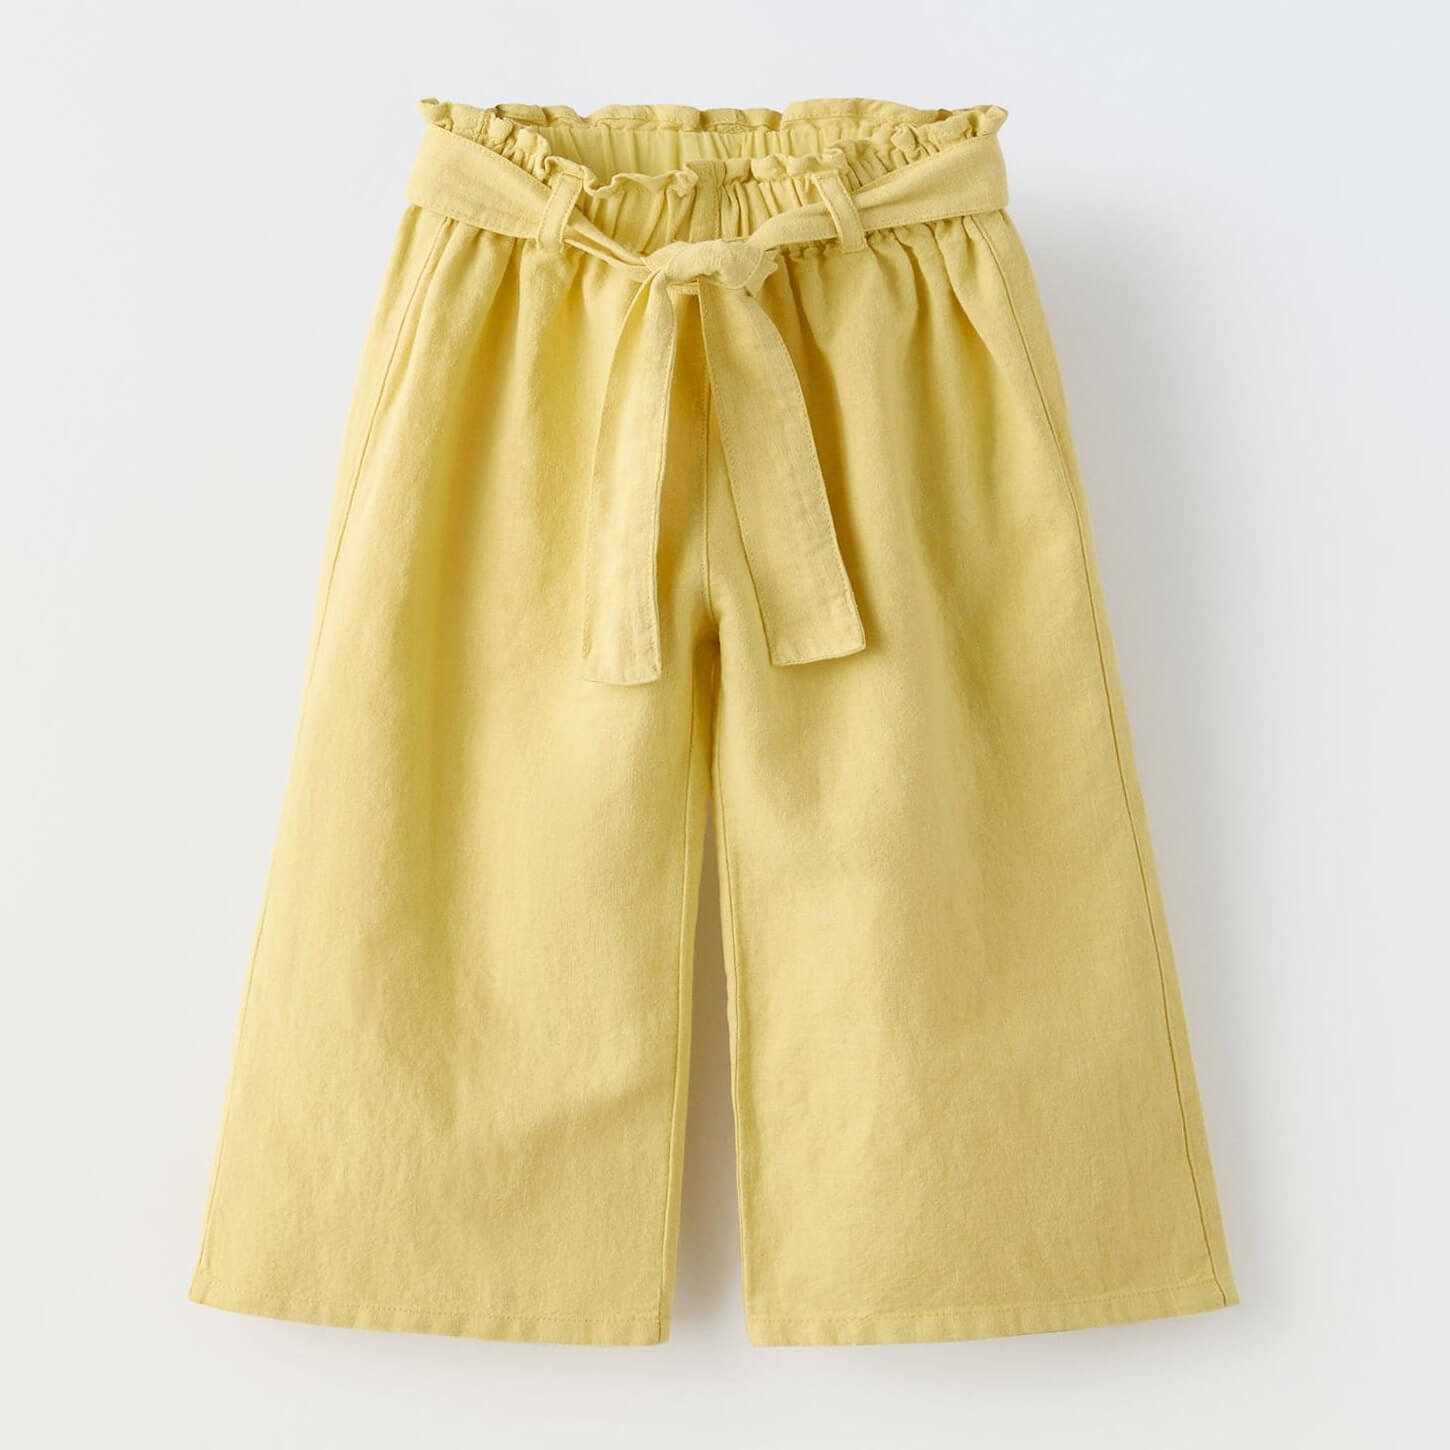 Брюки Zara Linen Blend Sash Belt, желто-зеленый юбка шорты zara linen blend with belt бежевый